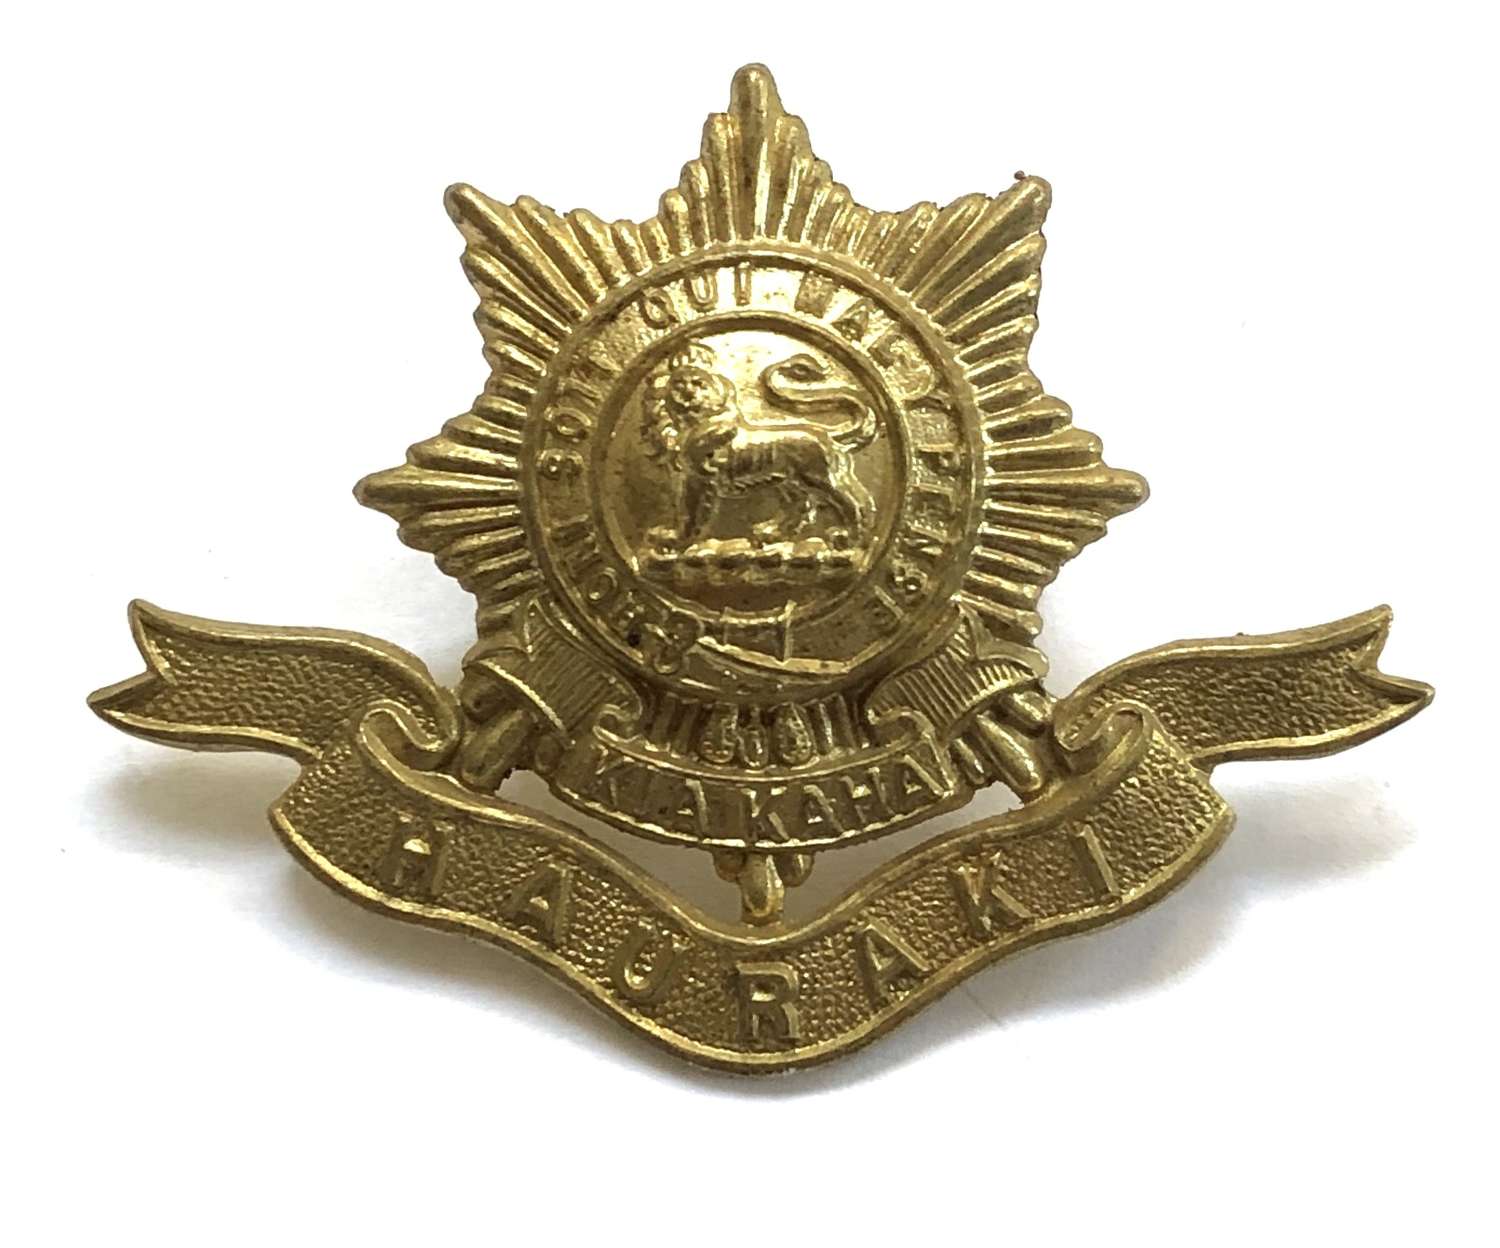 New Zealand Hauraki Regiment brass cap badge